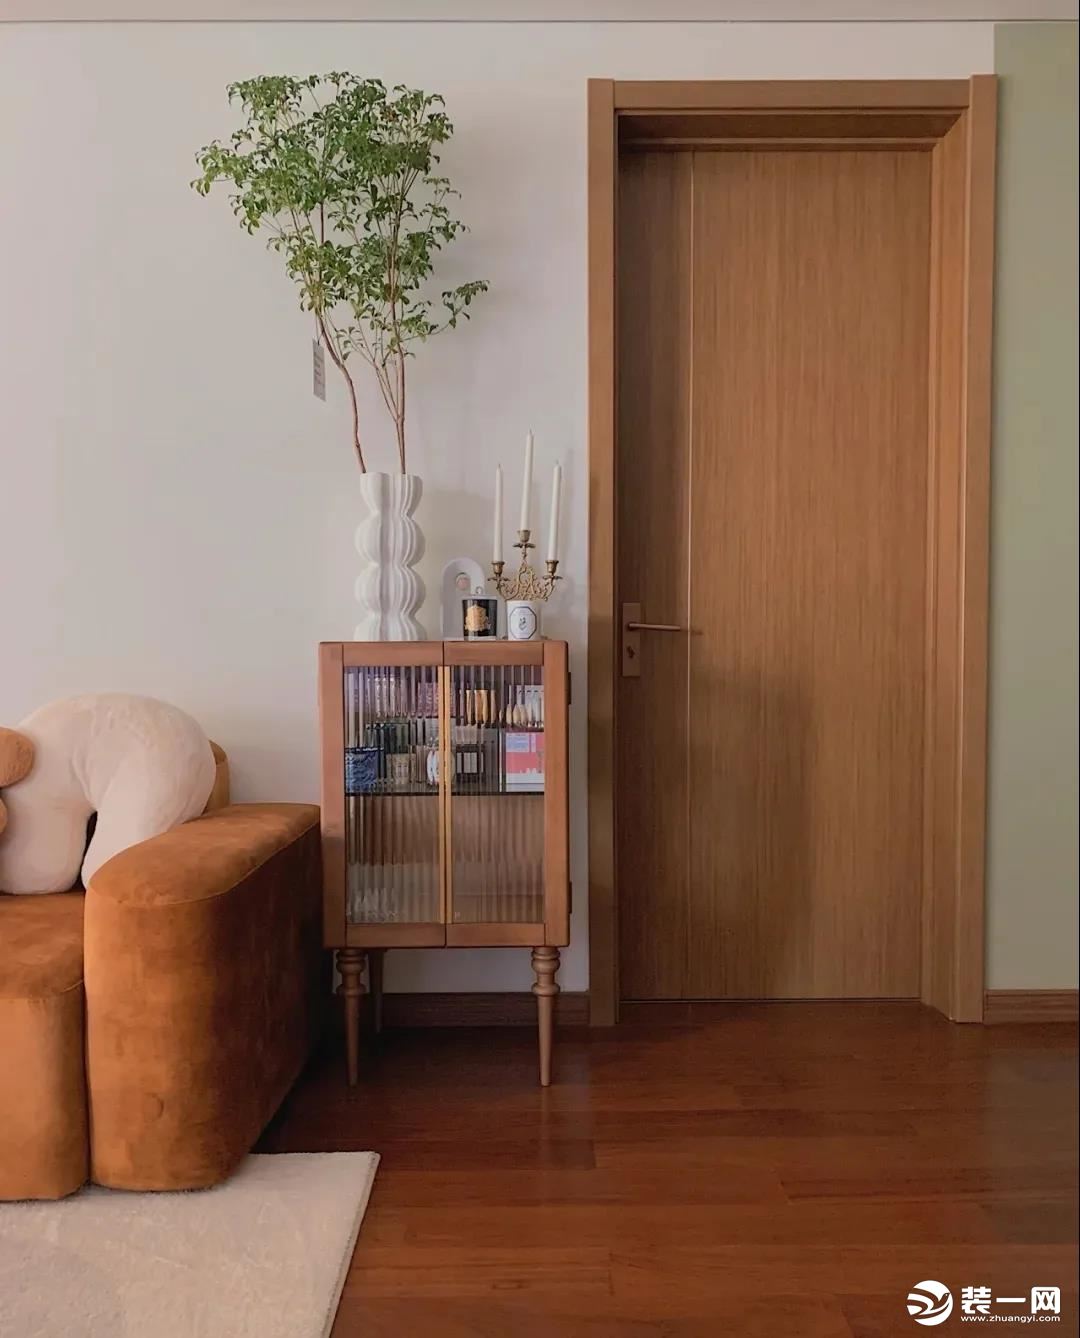 卧室和客厅相连的地方用了浅木色也是户主的一个小心机；从深到浅成为一个无形的指向路标，同时给杂乱的色调